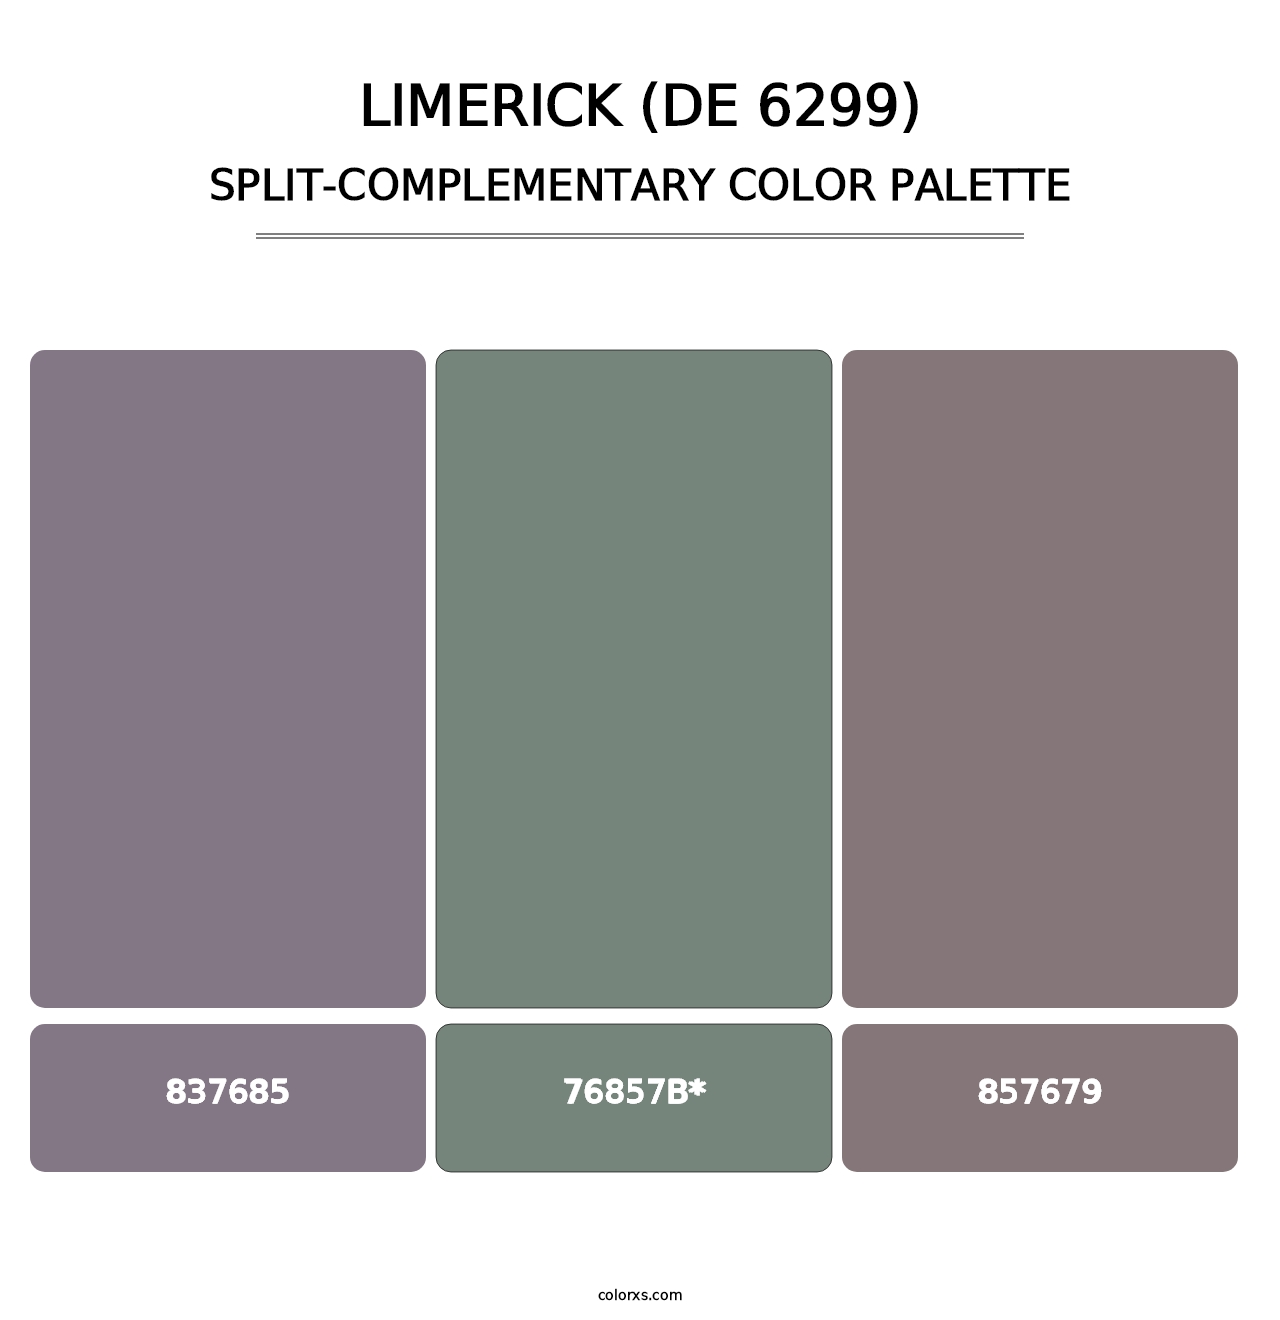 Limerick (DE 6299) - Split-Complementary Color Palette